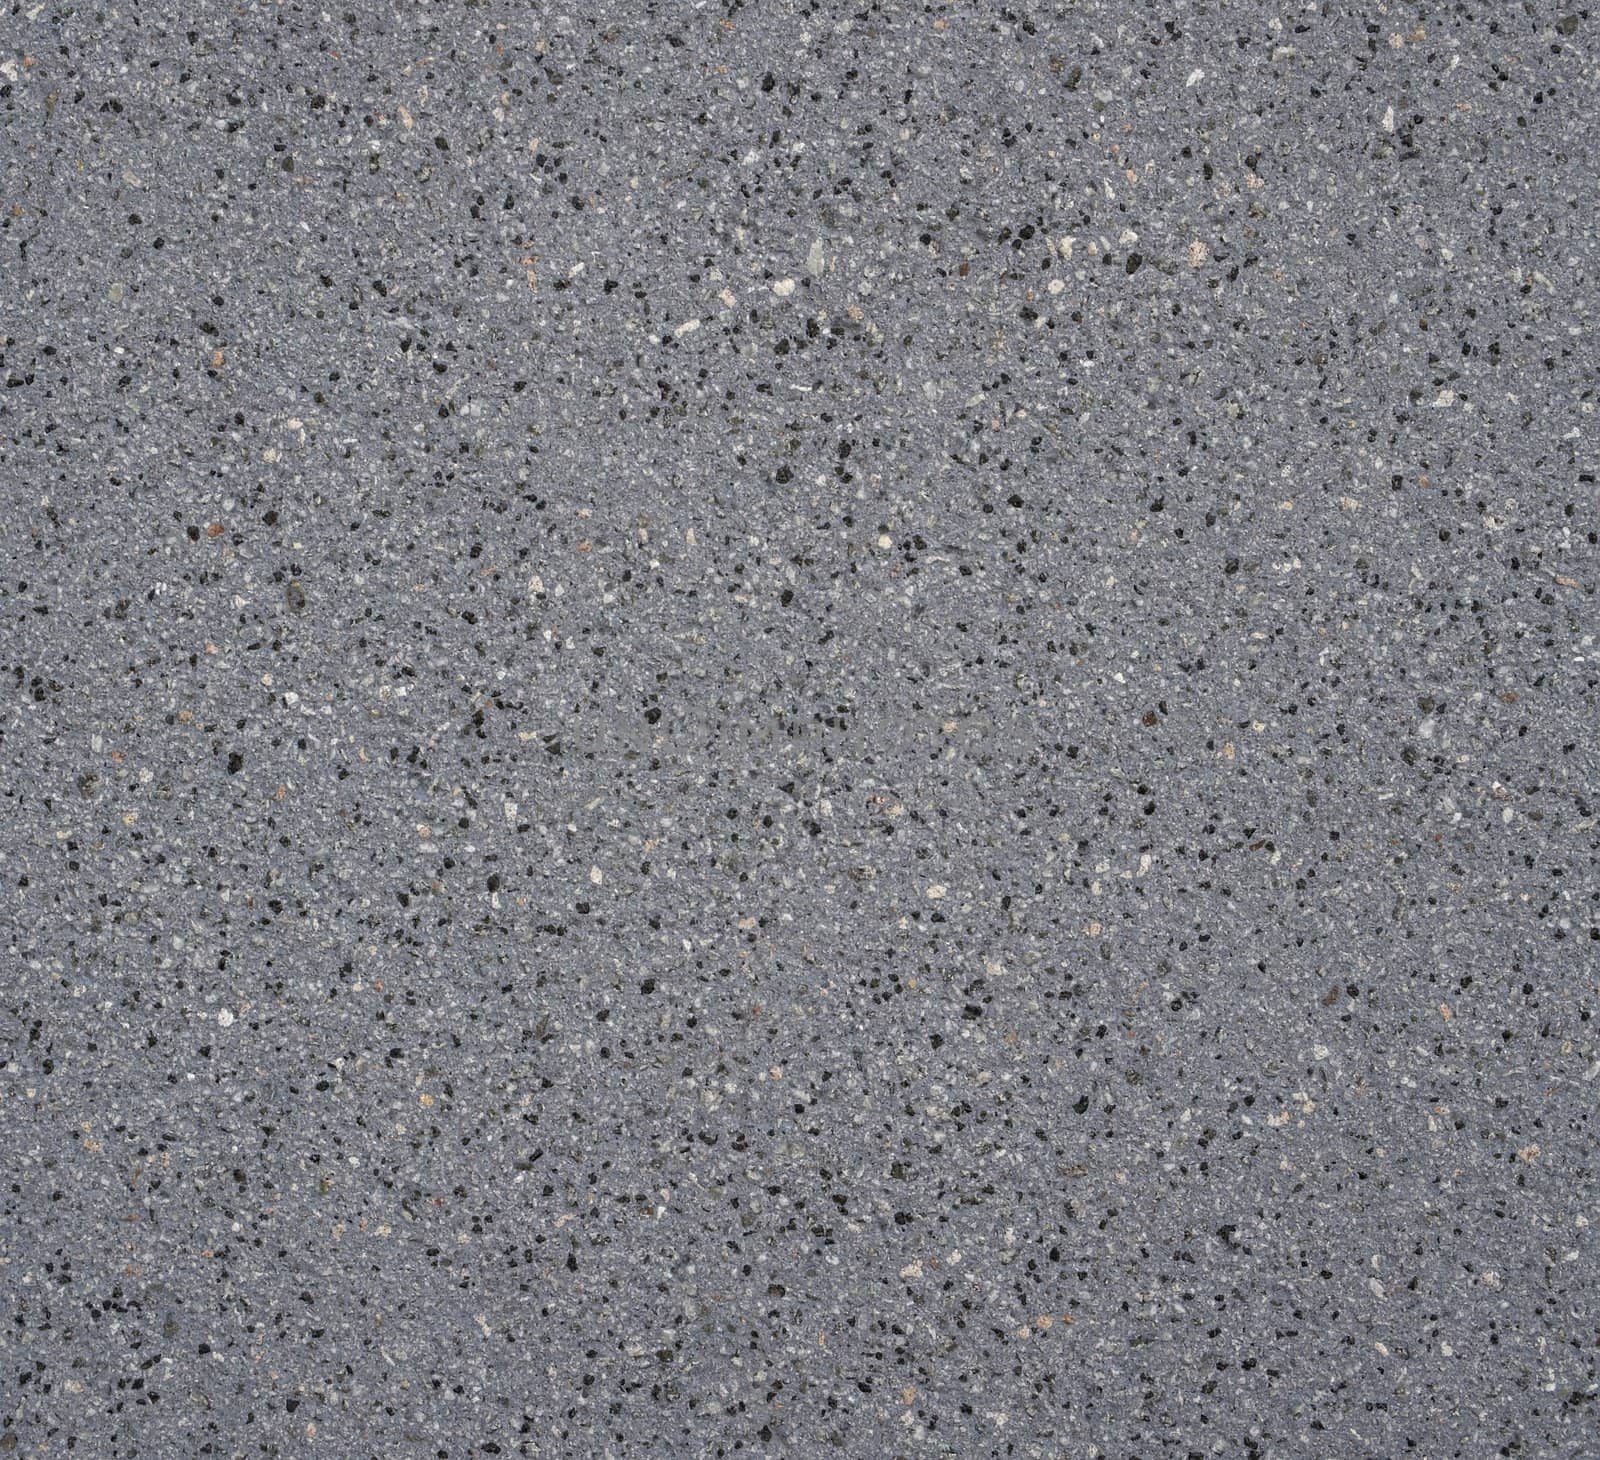 dappled stone surface by gewoldi